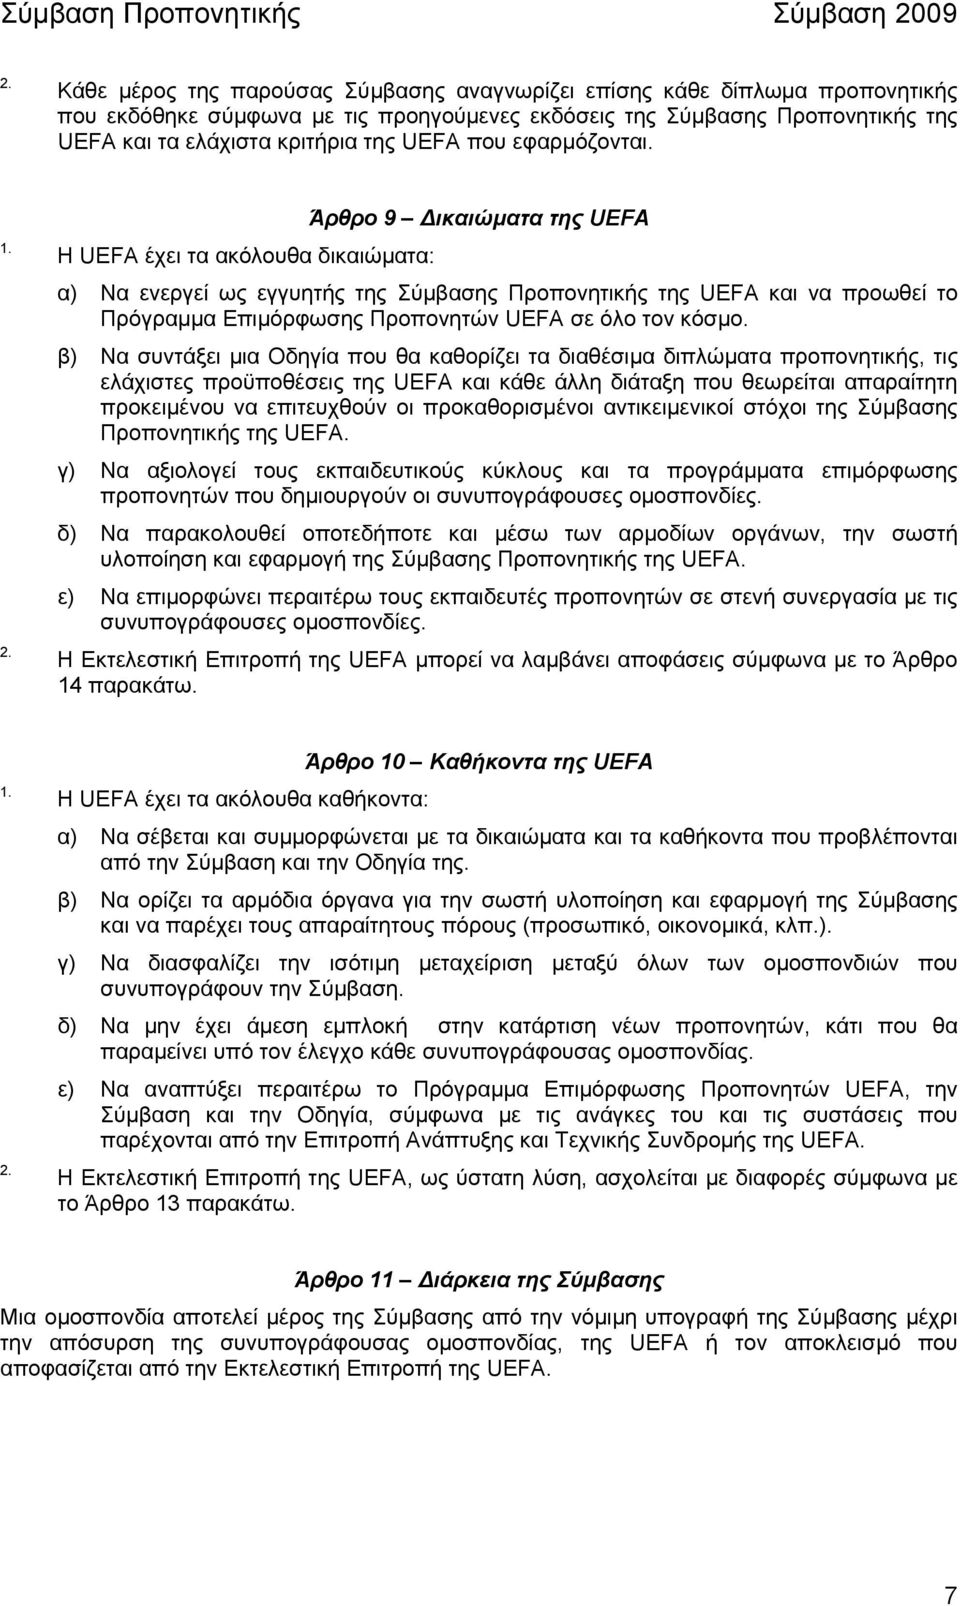 Άρθρο 9 ικαιώµατα της UEFA Η UEFA έχει τα ακόλουθα δικαιώµατα: α) Να ενεργεί ως εγγυητής της Σύµβασης Προπονητικής της UEFA και να προωθεί το Πρόγραµµα Επιµόρφωσης Προπονητών UEFA σε όλο τον κόσµο.